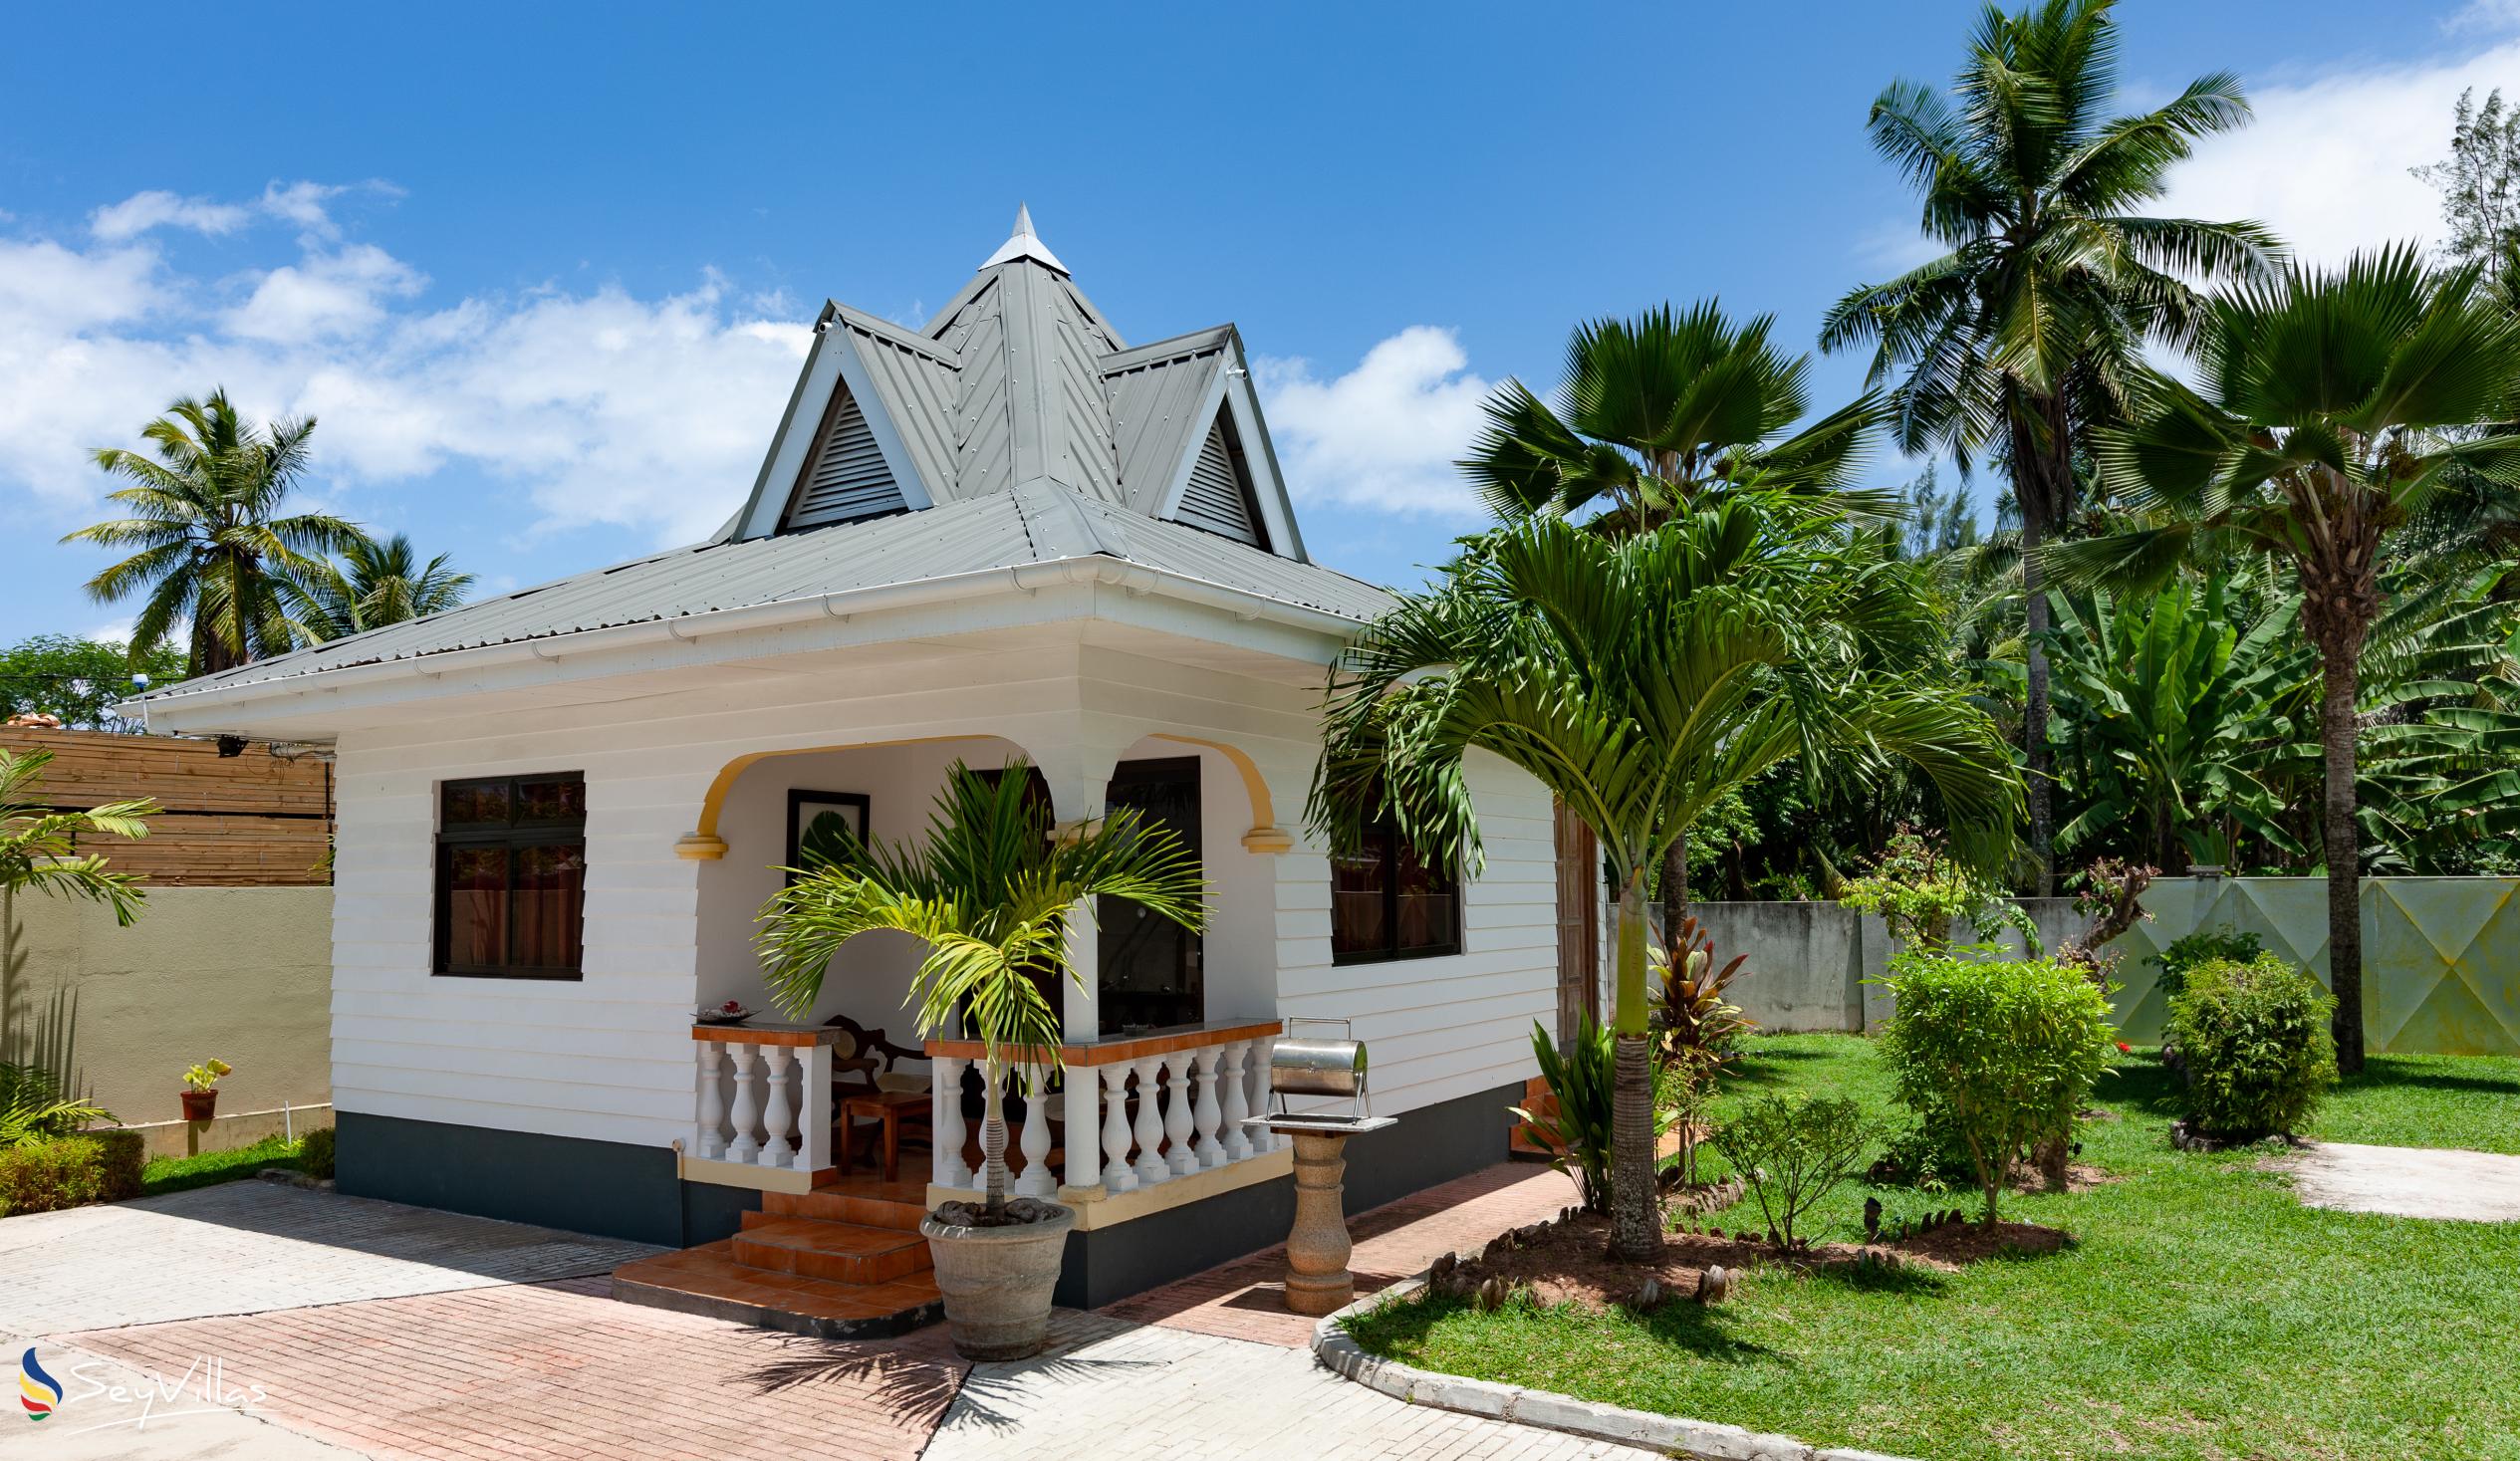 Foto 6: Villa Aya - Extérieur - Praslin (Seychelles)